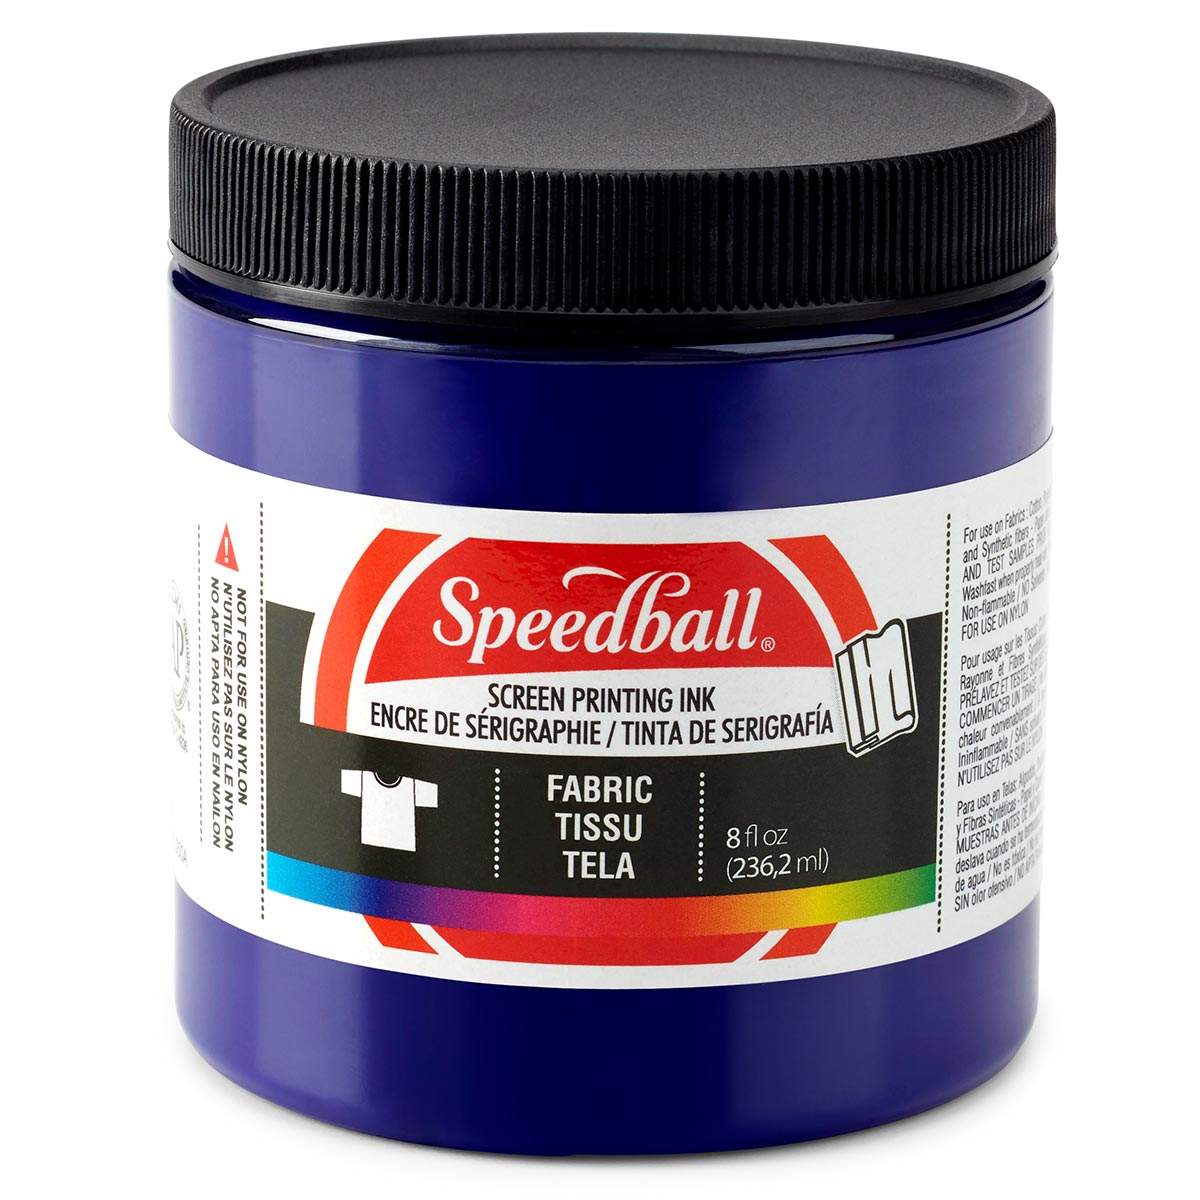 Speedball-Stoff Siebdruck Tinte 236ml (8oz) -Violett